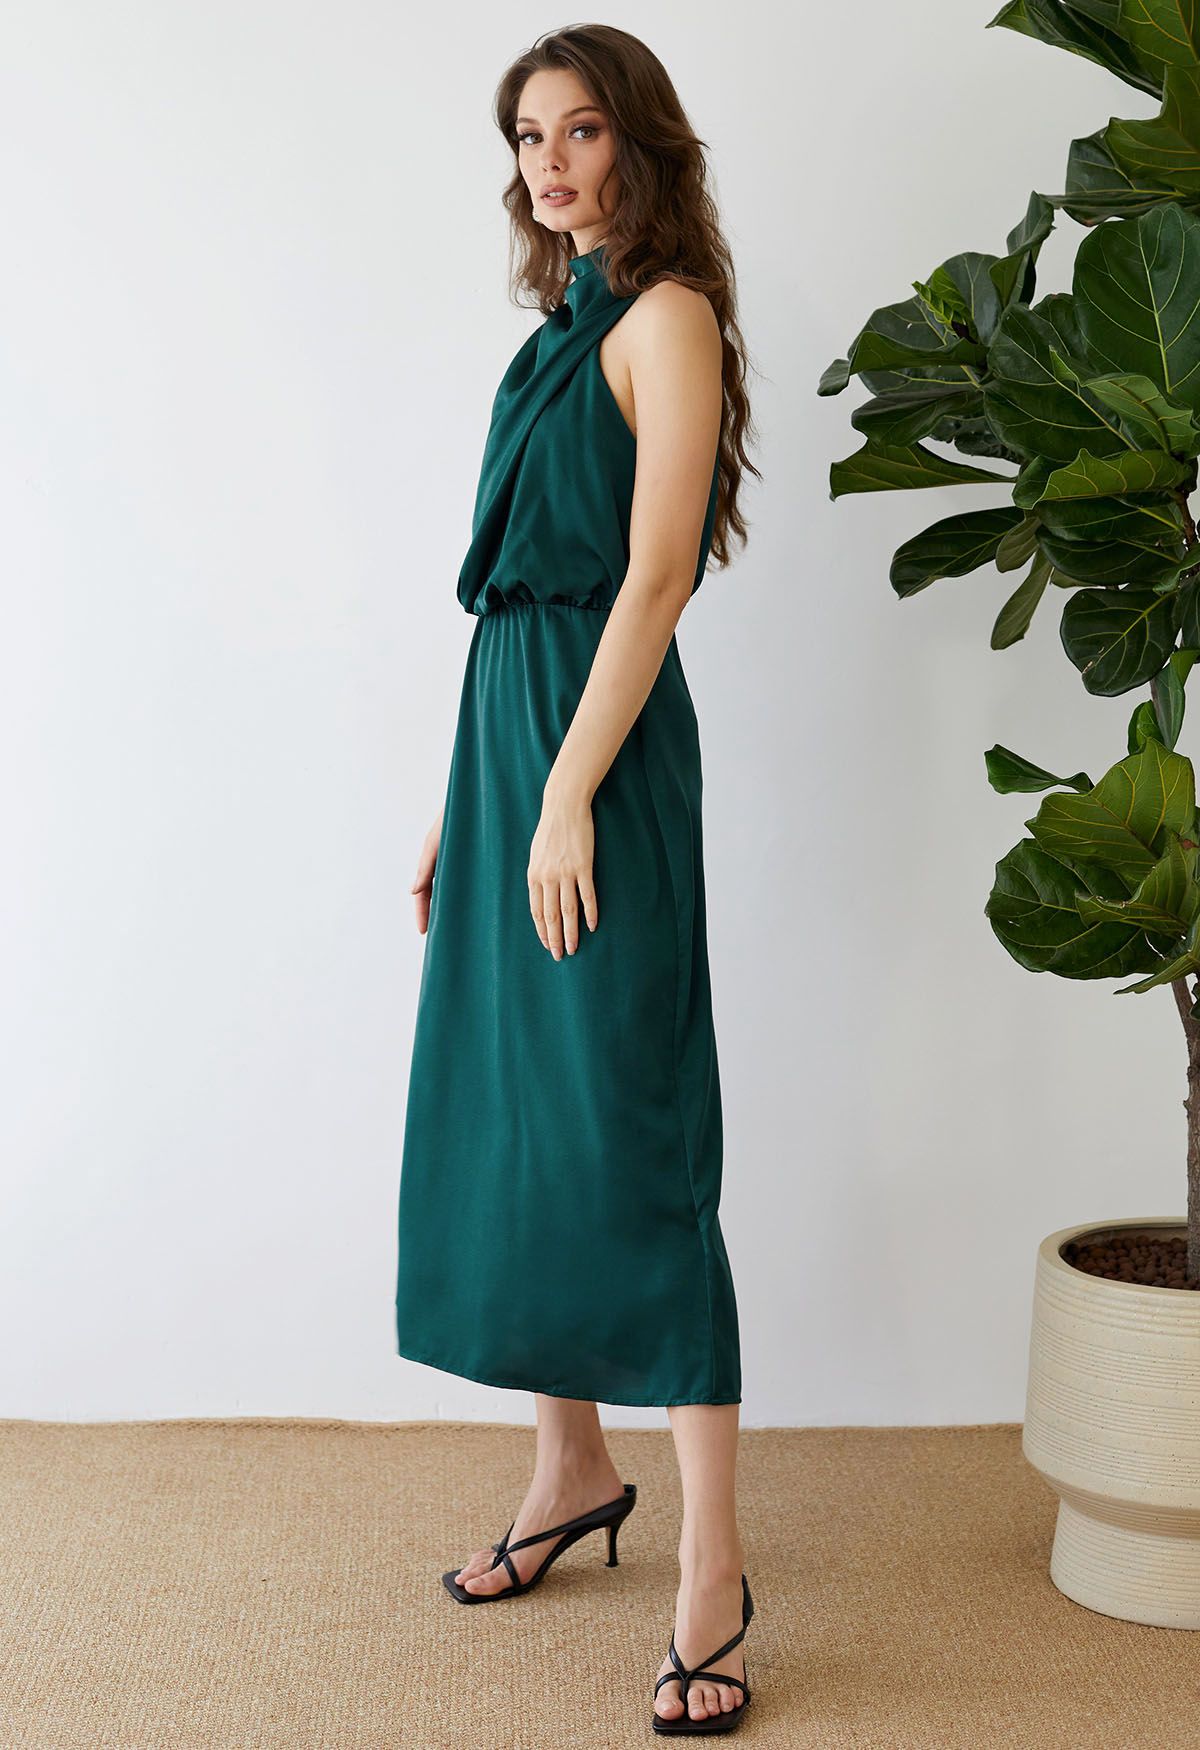 Asymmetric Ruched Neckline Sleeveless Dress in Dark Green